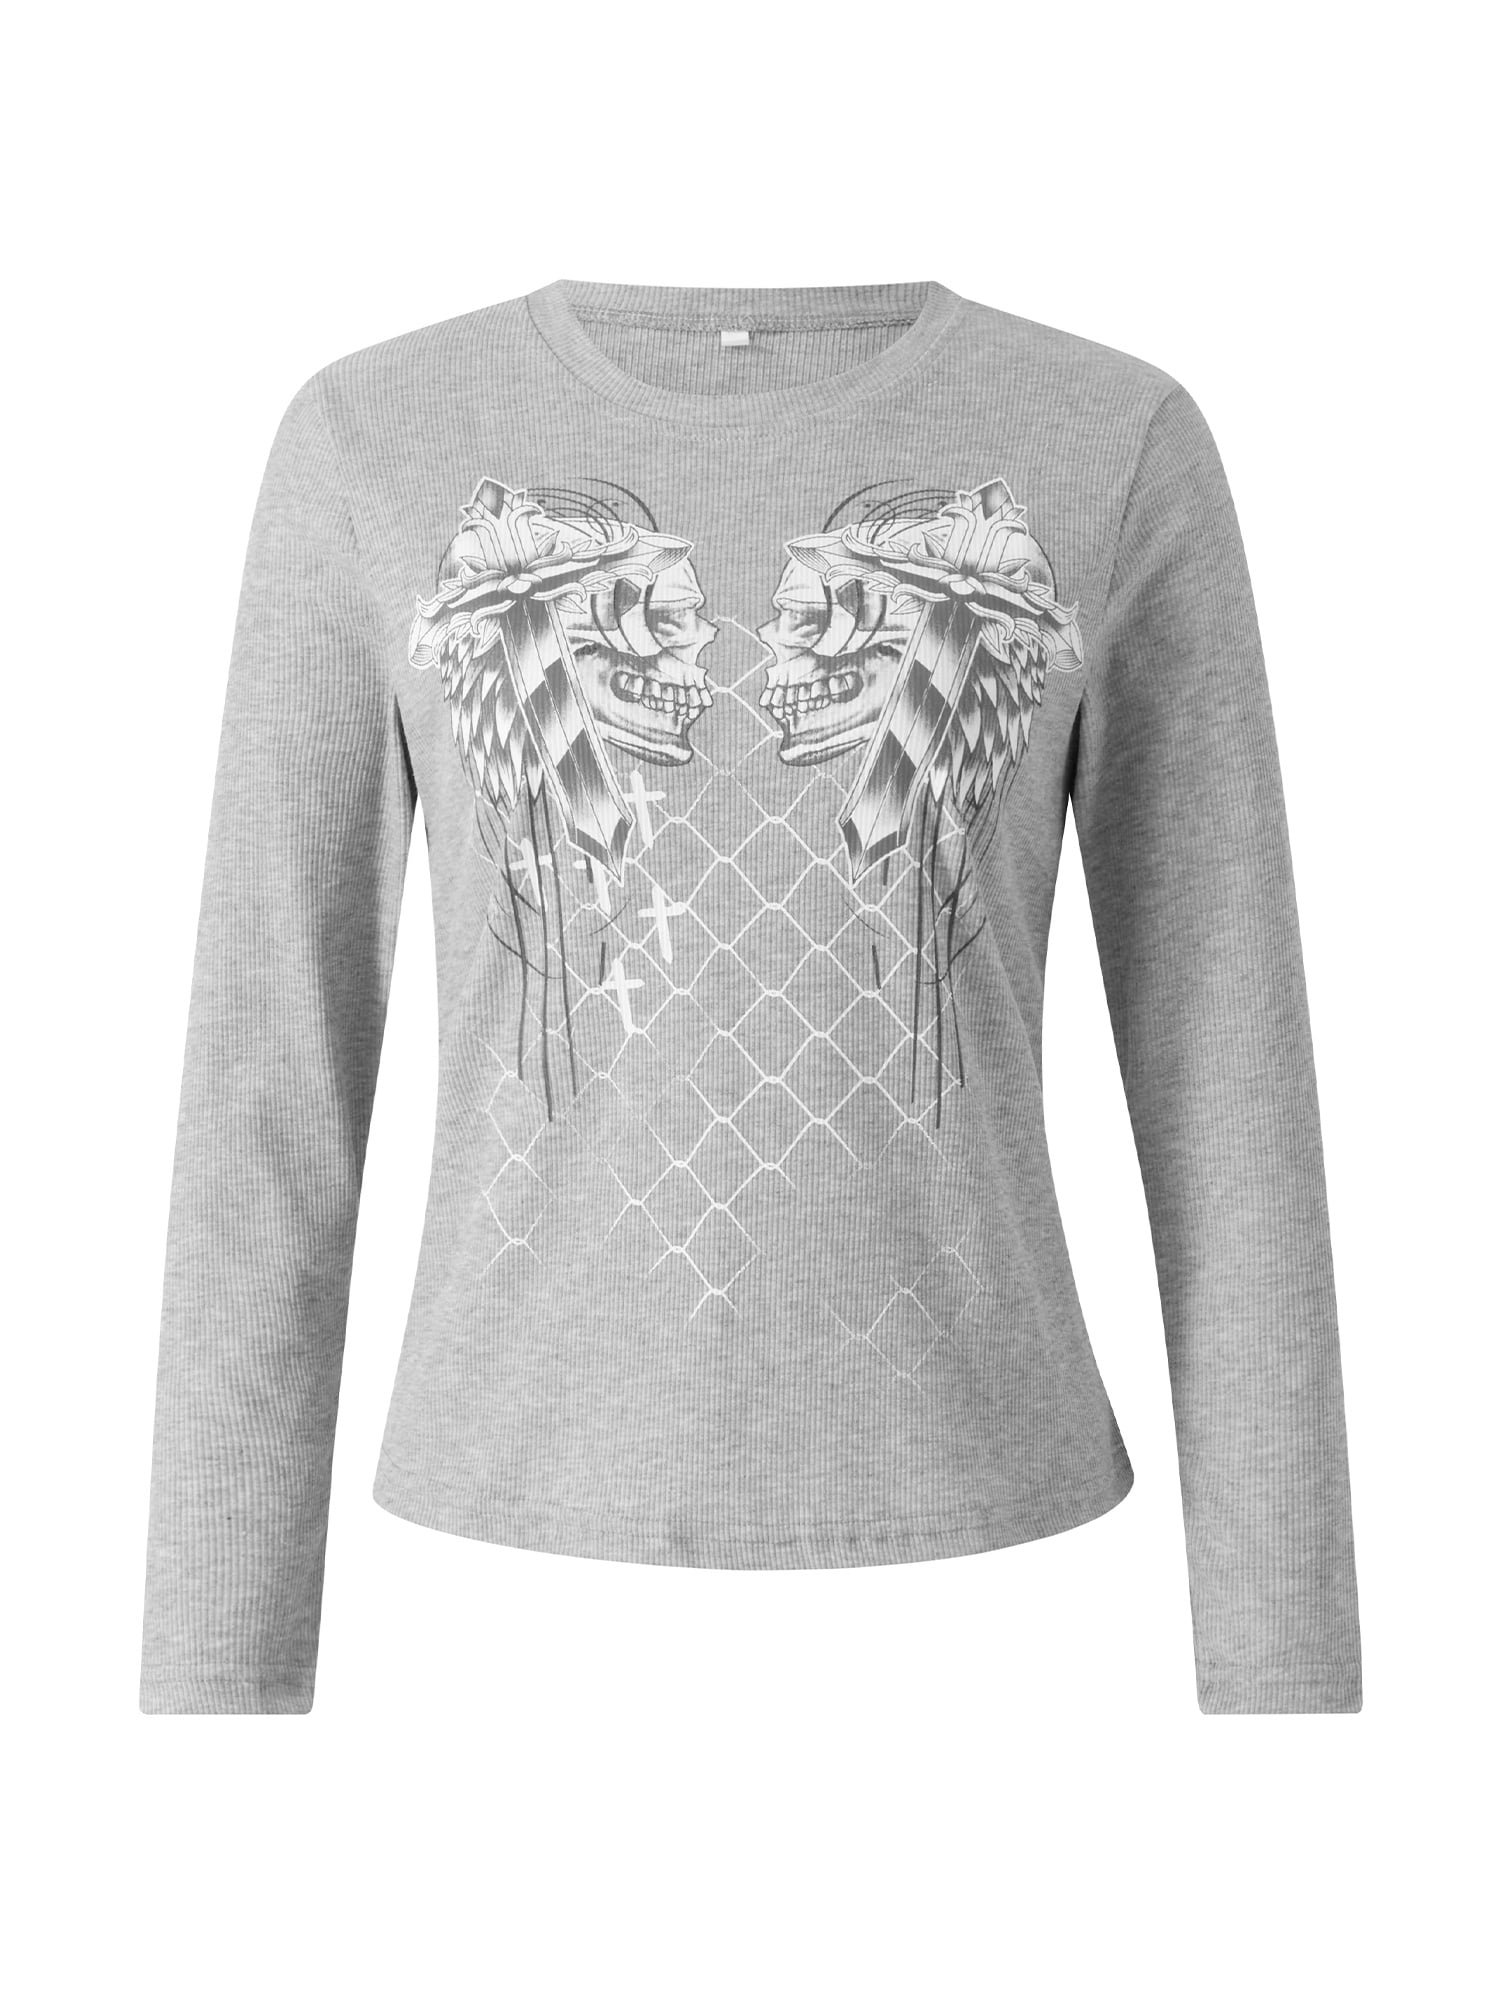 Aunavey Women Teen Girls Fairy Grunge Top Y2k Long Sleeve Baggy Sweatshirt  Graphic Tee Vintage Streetwear T-Shirt 